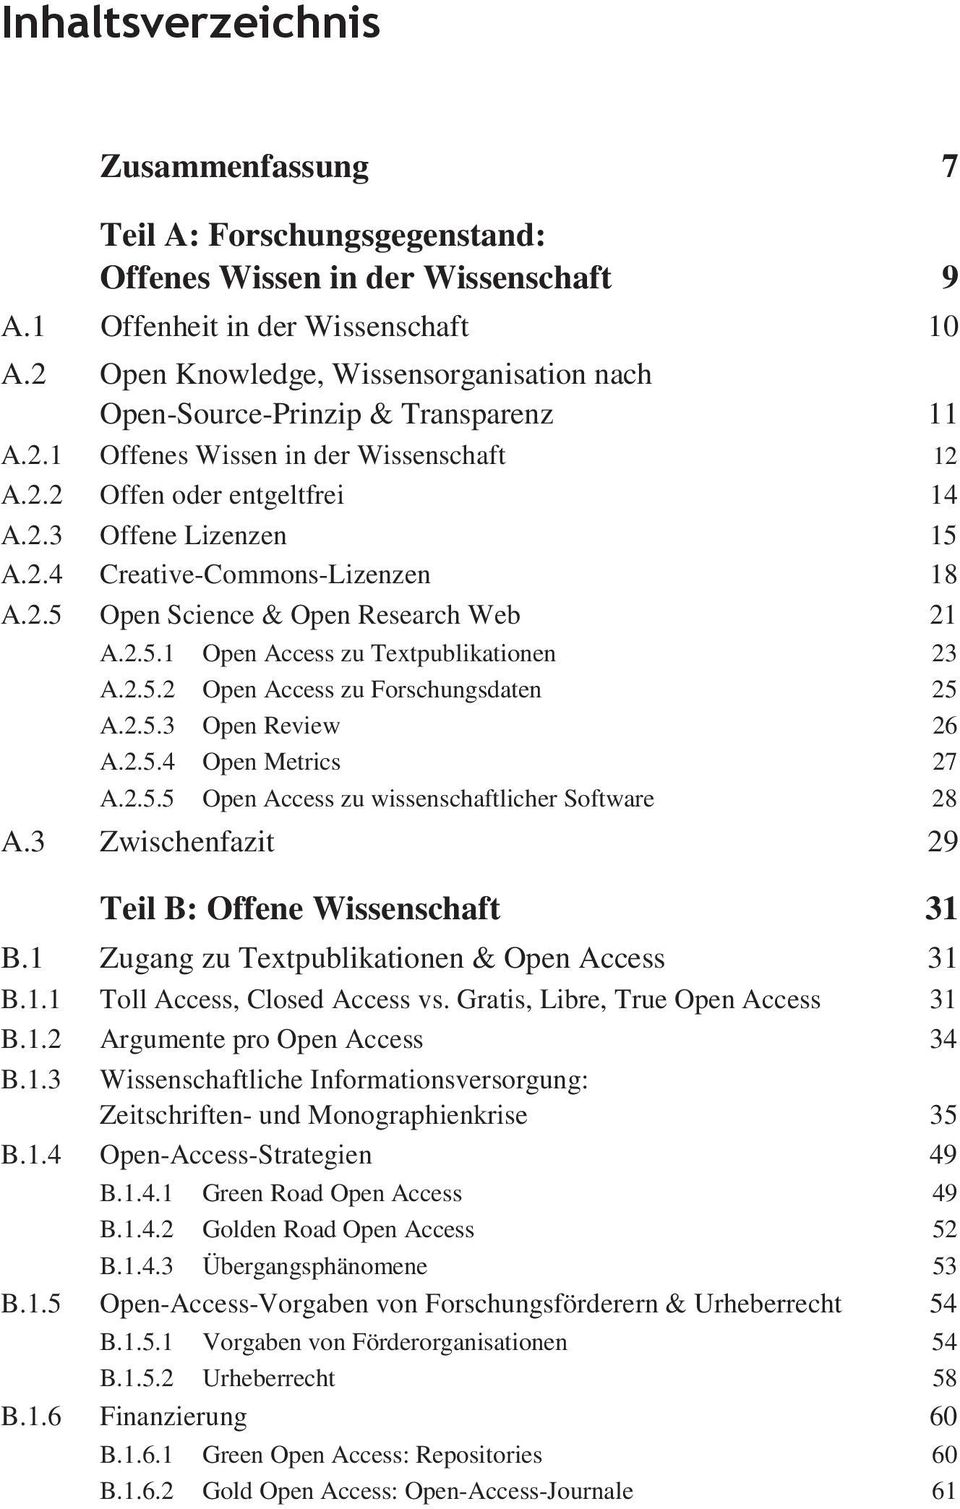 2.5 Open Science & Open Research Web 21 A.2.5.1 Open Access zu Textpublikationen 23 A.2.5.2 Open Access zu Forschungsdaten 25 A.2.5.3 Open Review 26 A.2.5.4 Open Metrics 27 A.2.5.5 Open Access zu wissenschaftlicher Software 28 A.